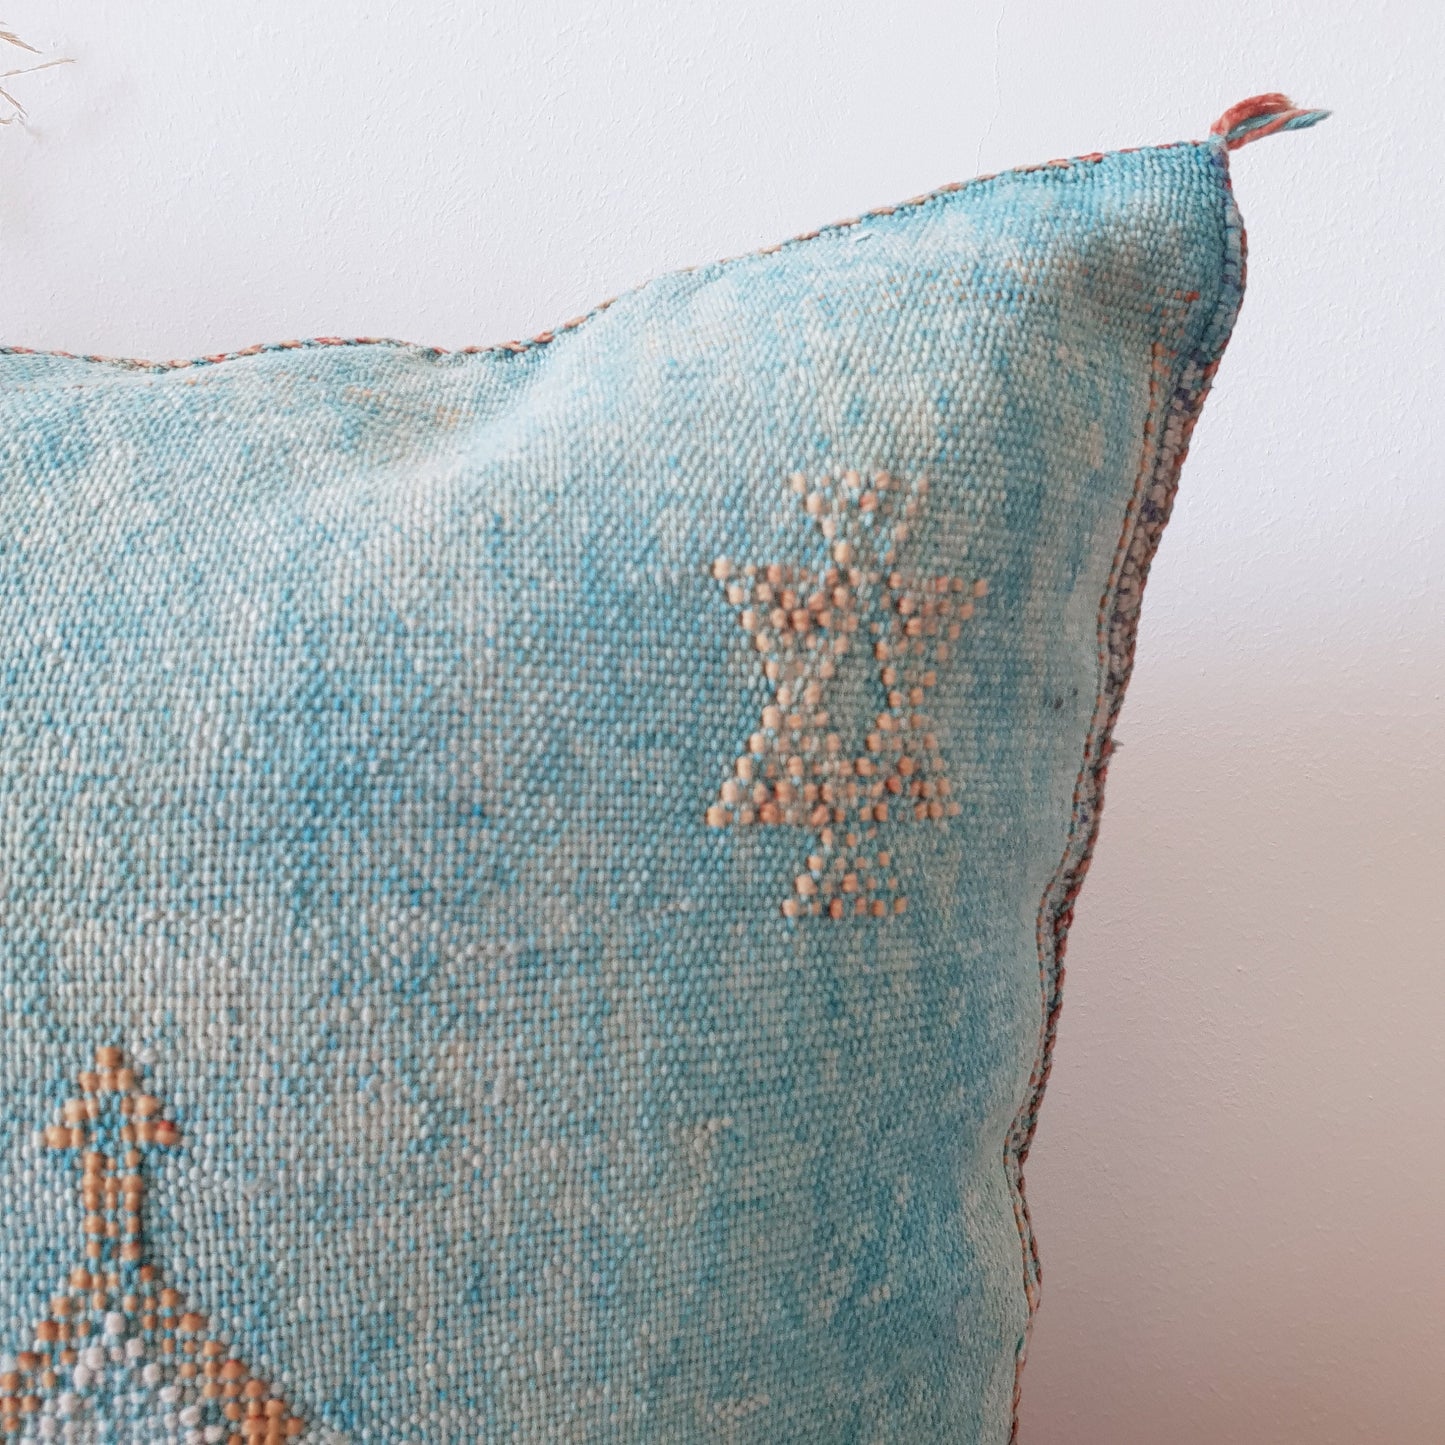 Moroccan Cactus Silk cushion - kilim Pillow